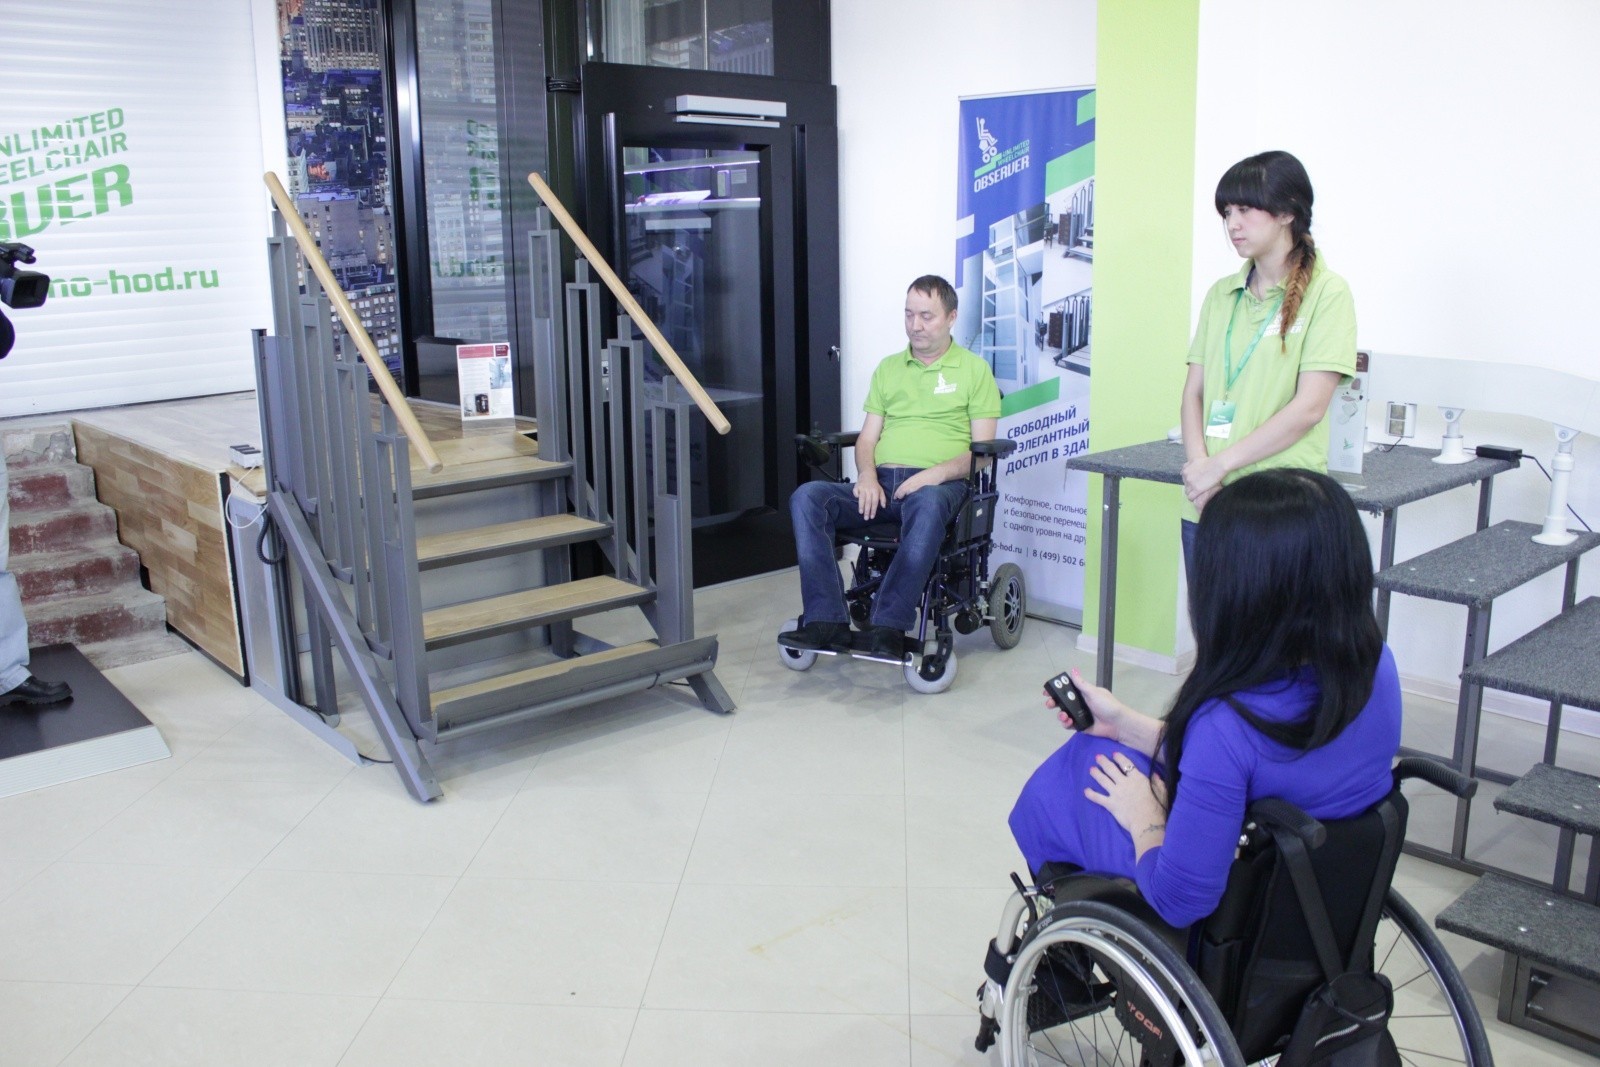 Сайт ресурсного центра для инвалидов. Новоостаповская 6 ресурсный центр для инвалидов. Ресурсный центр для инвалидов на Дубровке. Ресурсный центр для инвалидов на Береговом.